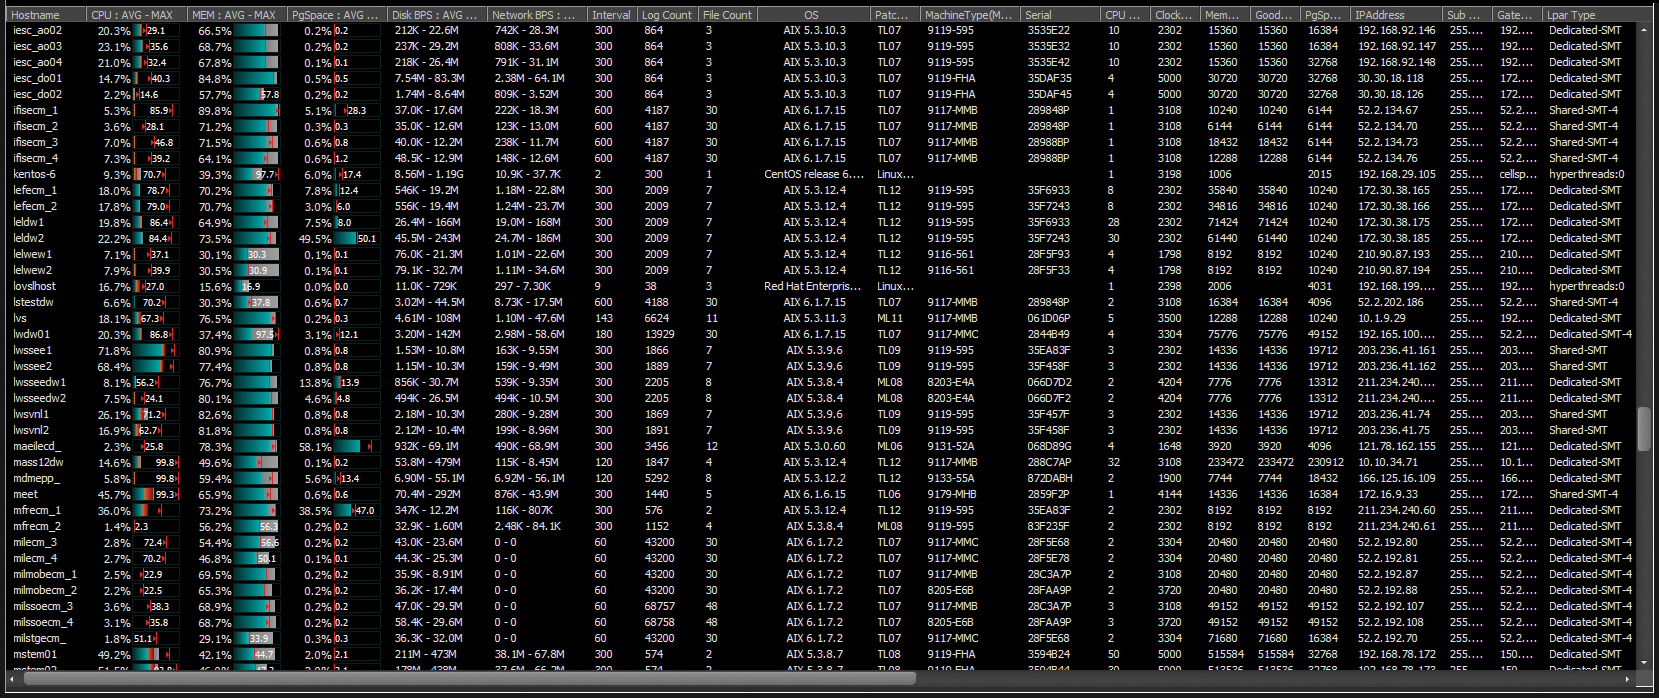 Main performance data for each server. 